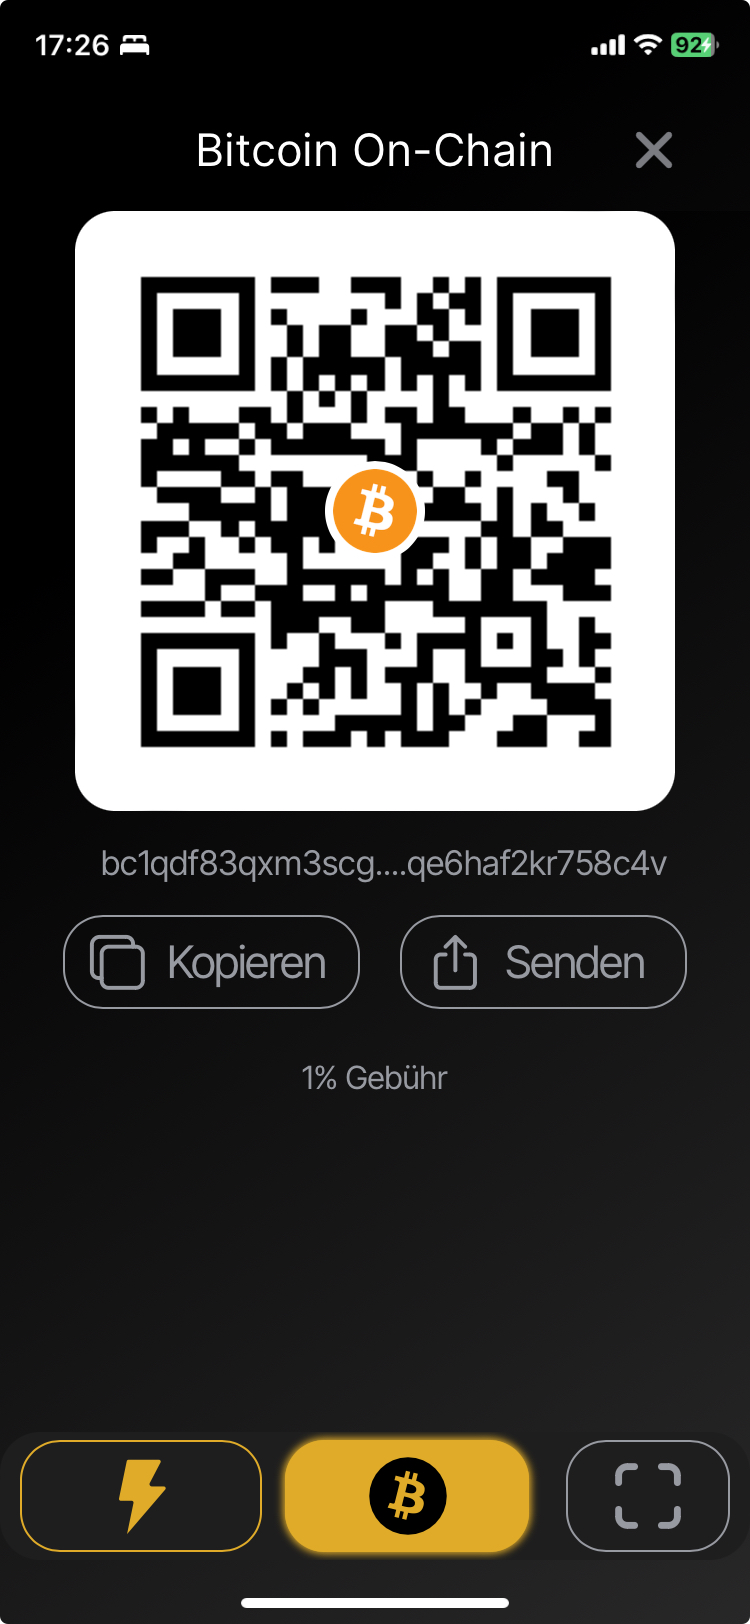 Bitcoin zahlungen erhalten